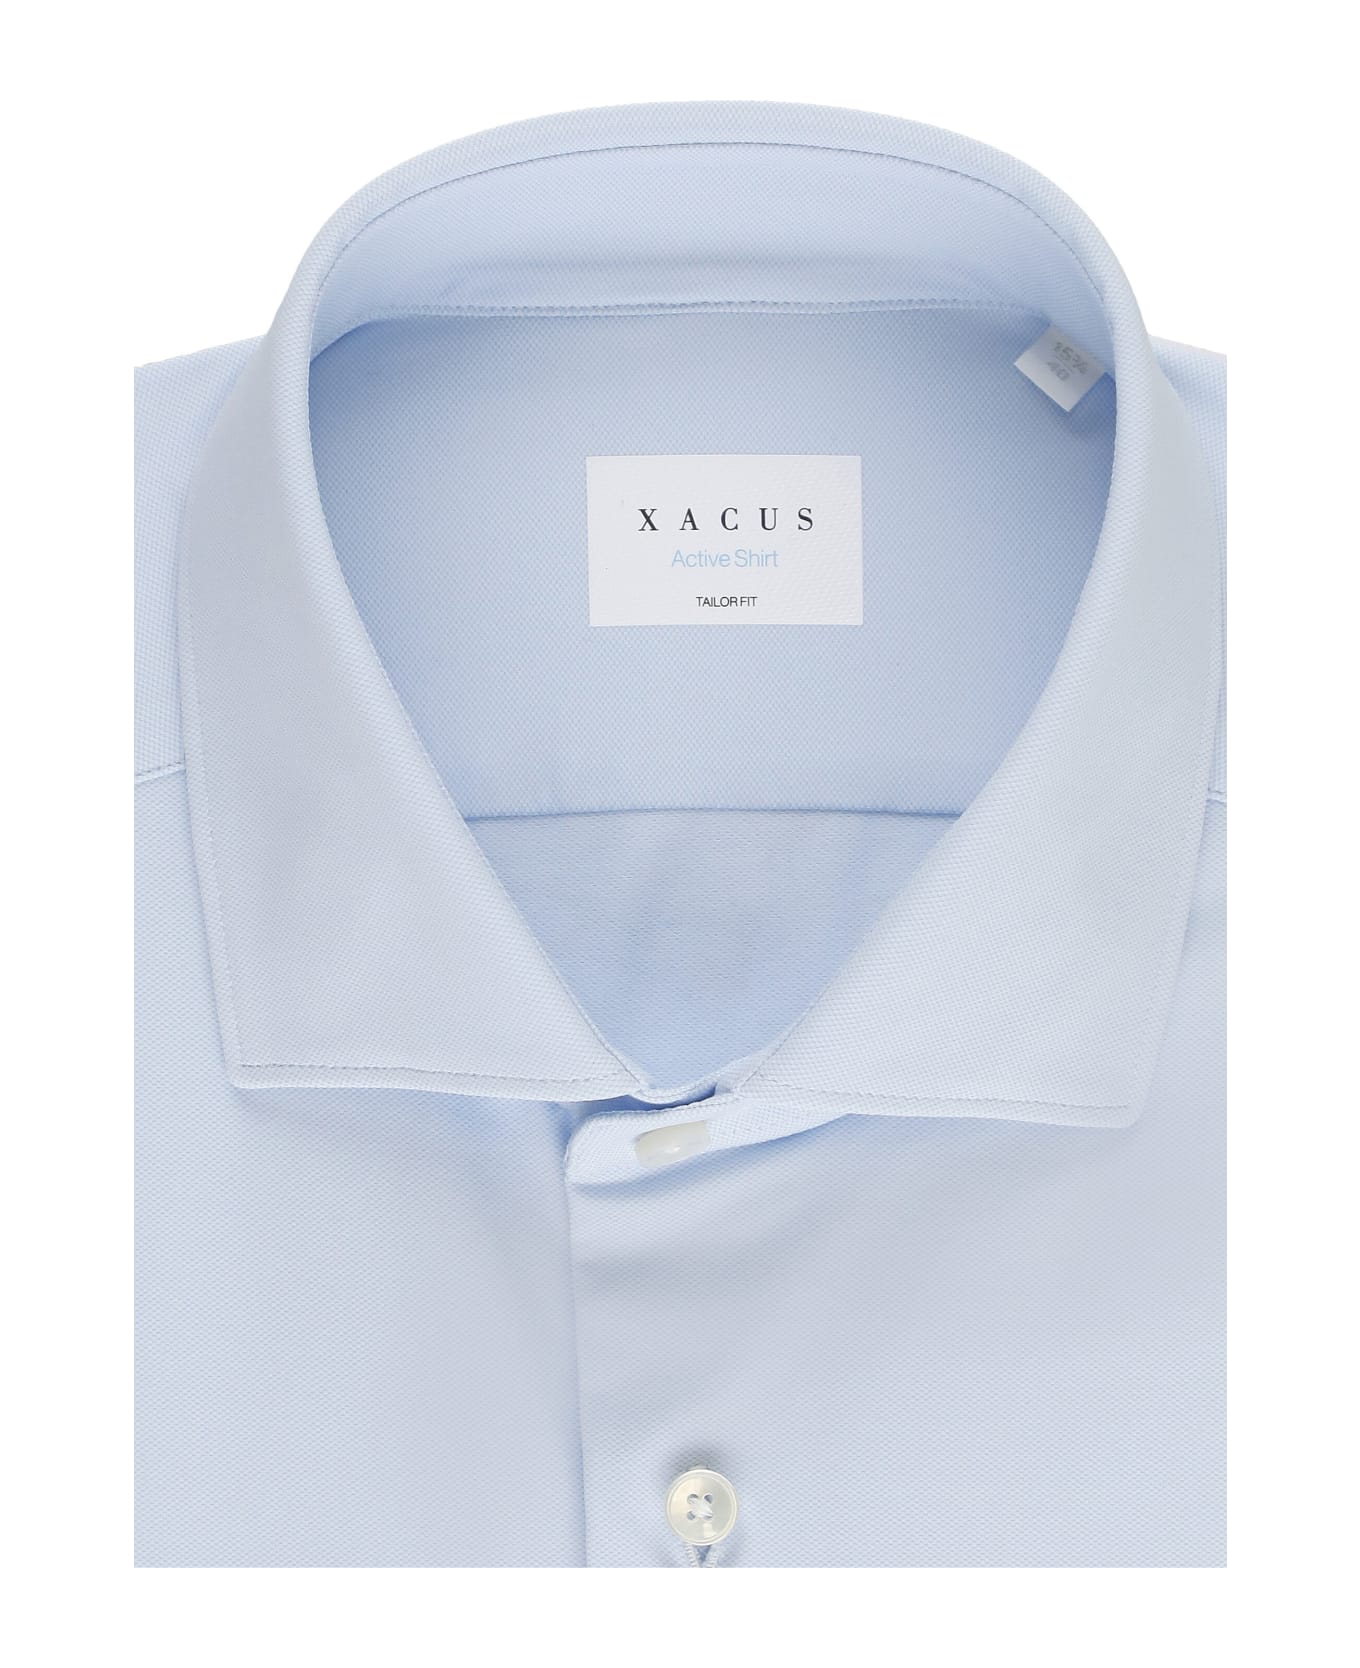 Xacus Active Shirt - Clear Blue シャツ